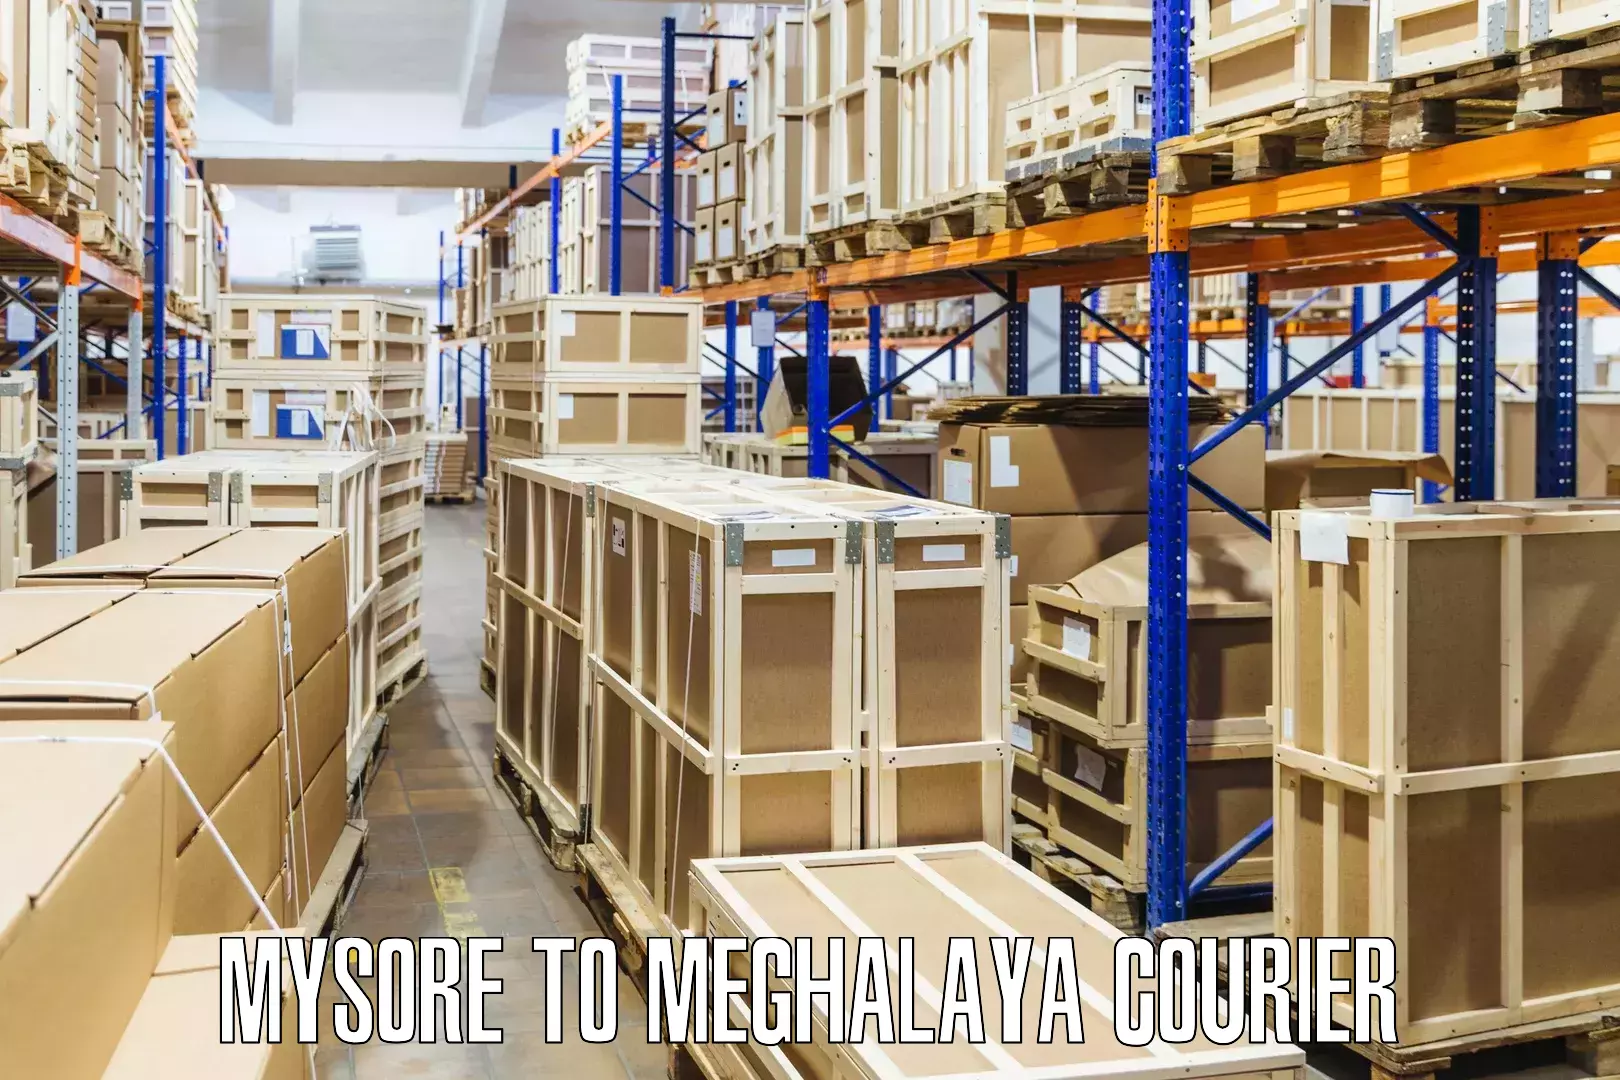 Logistics service provider Mysore to Nongpoh